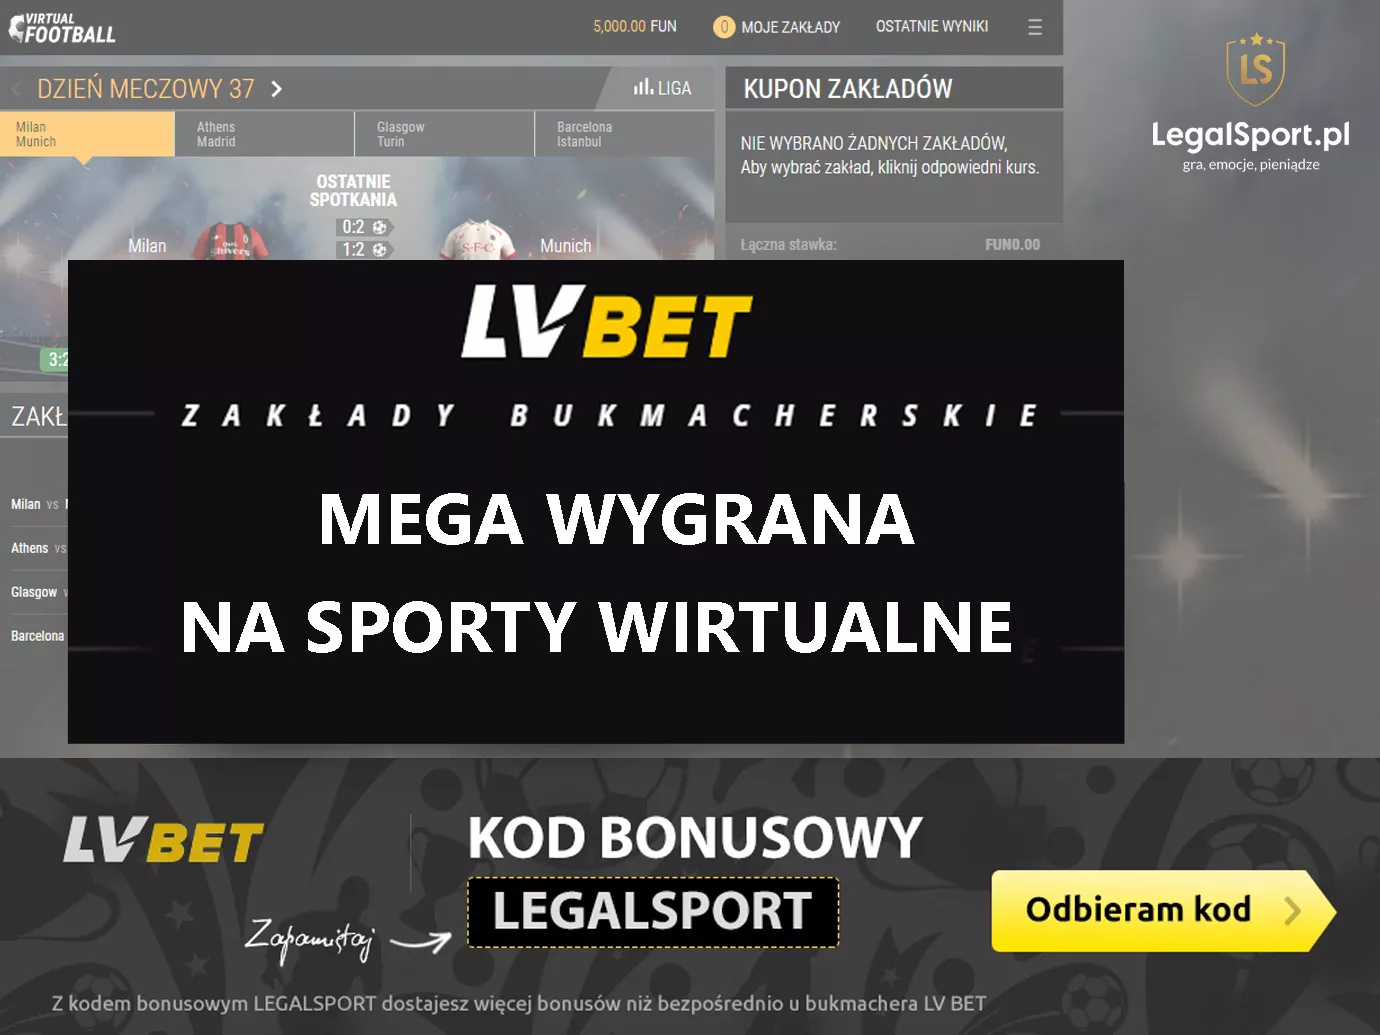 Sporty wirtualne - mega wygrana z kursem 940.00